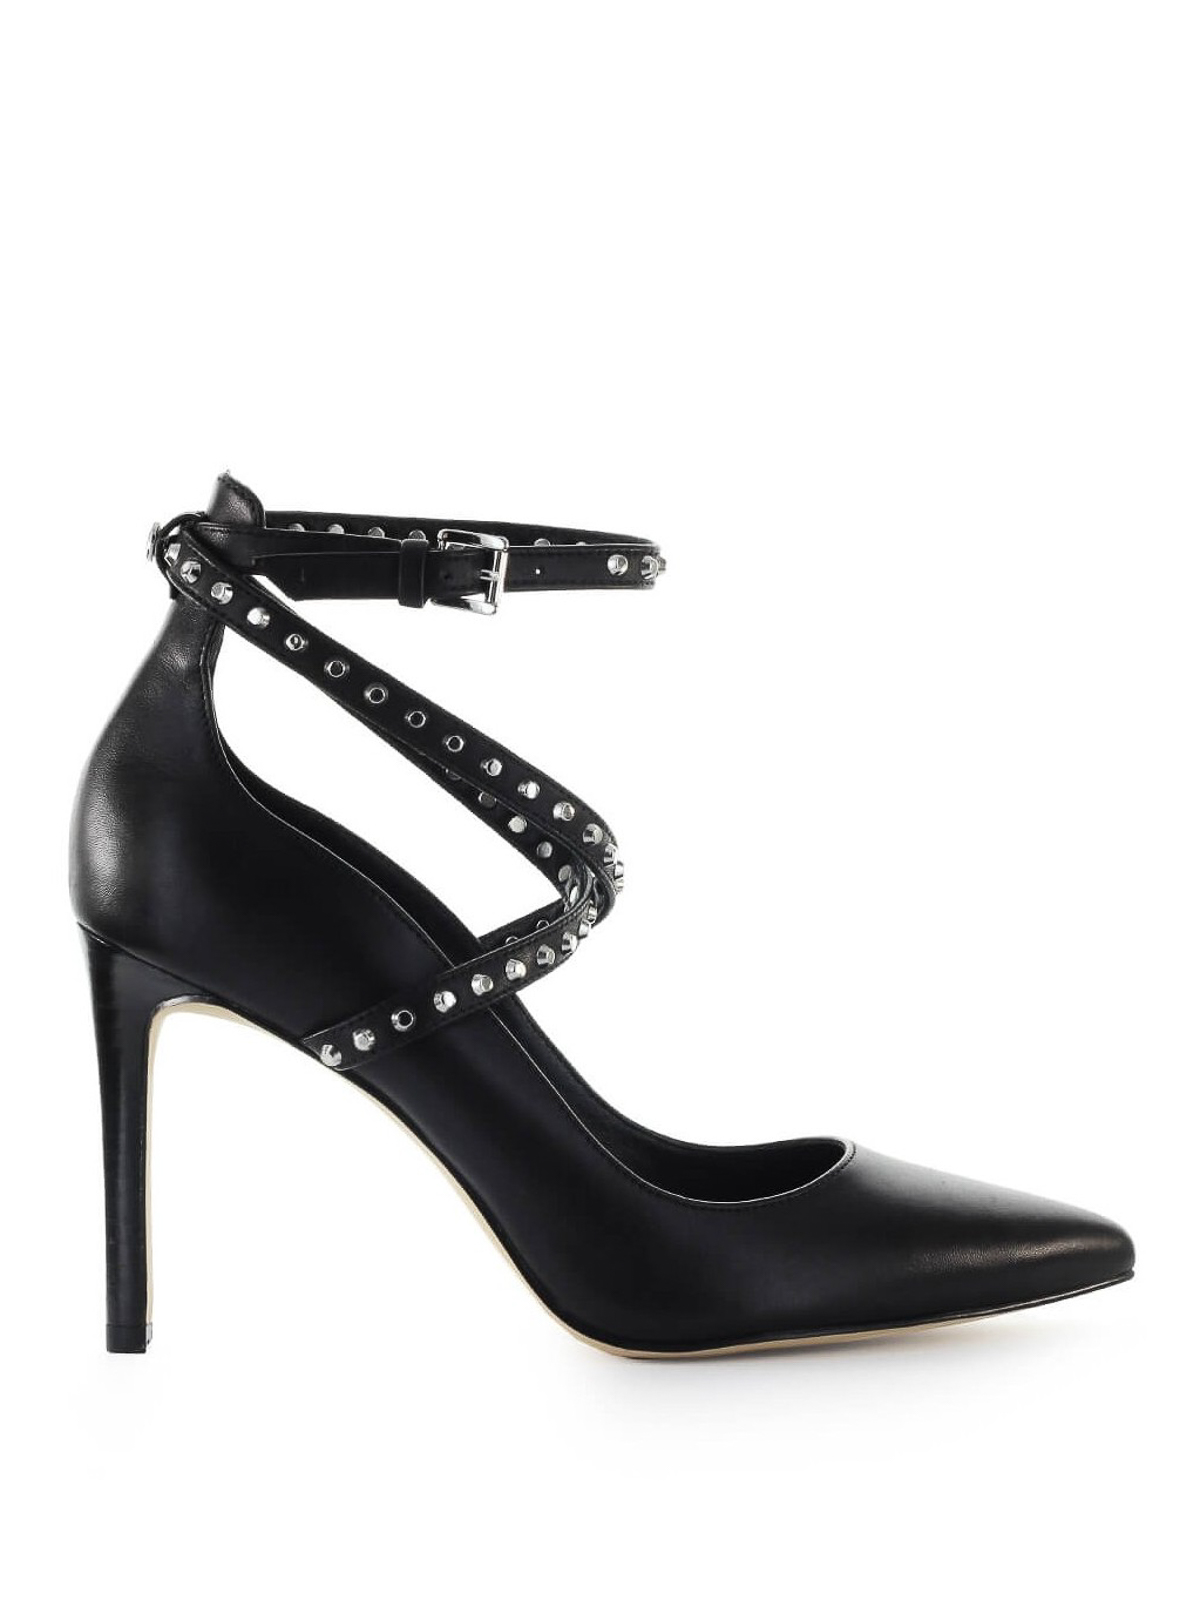 Total 50+ imagen michael kors black studded heels - Abzlocal.mx